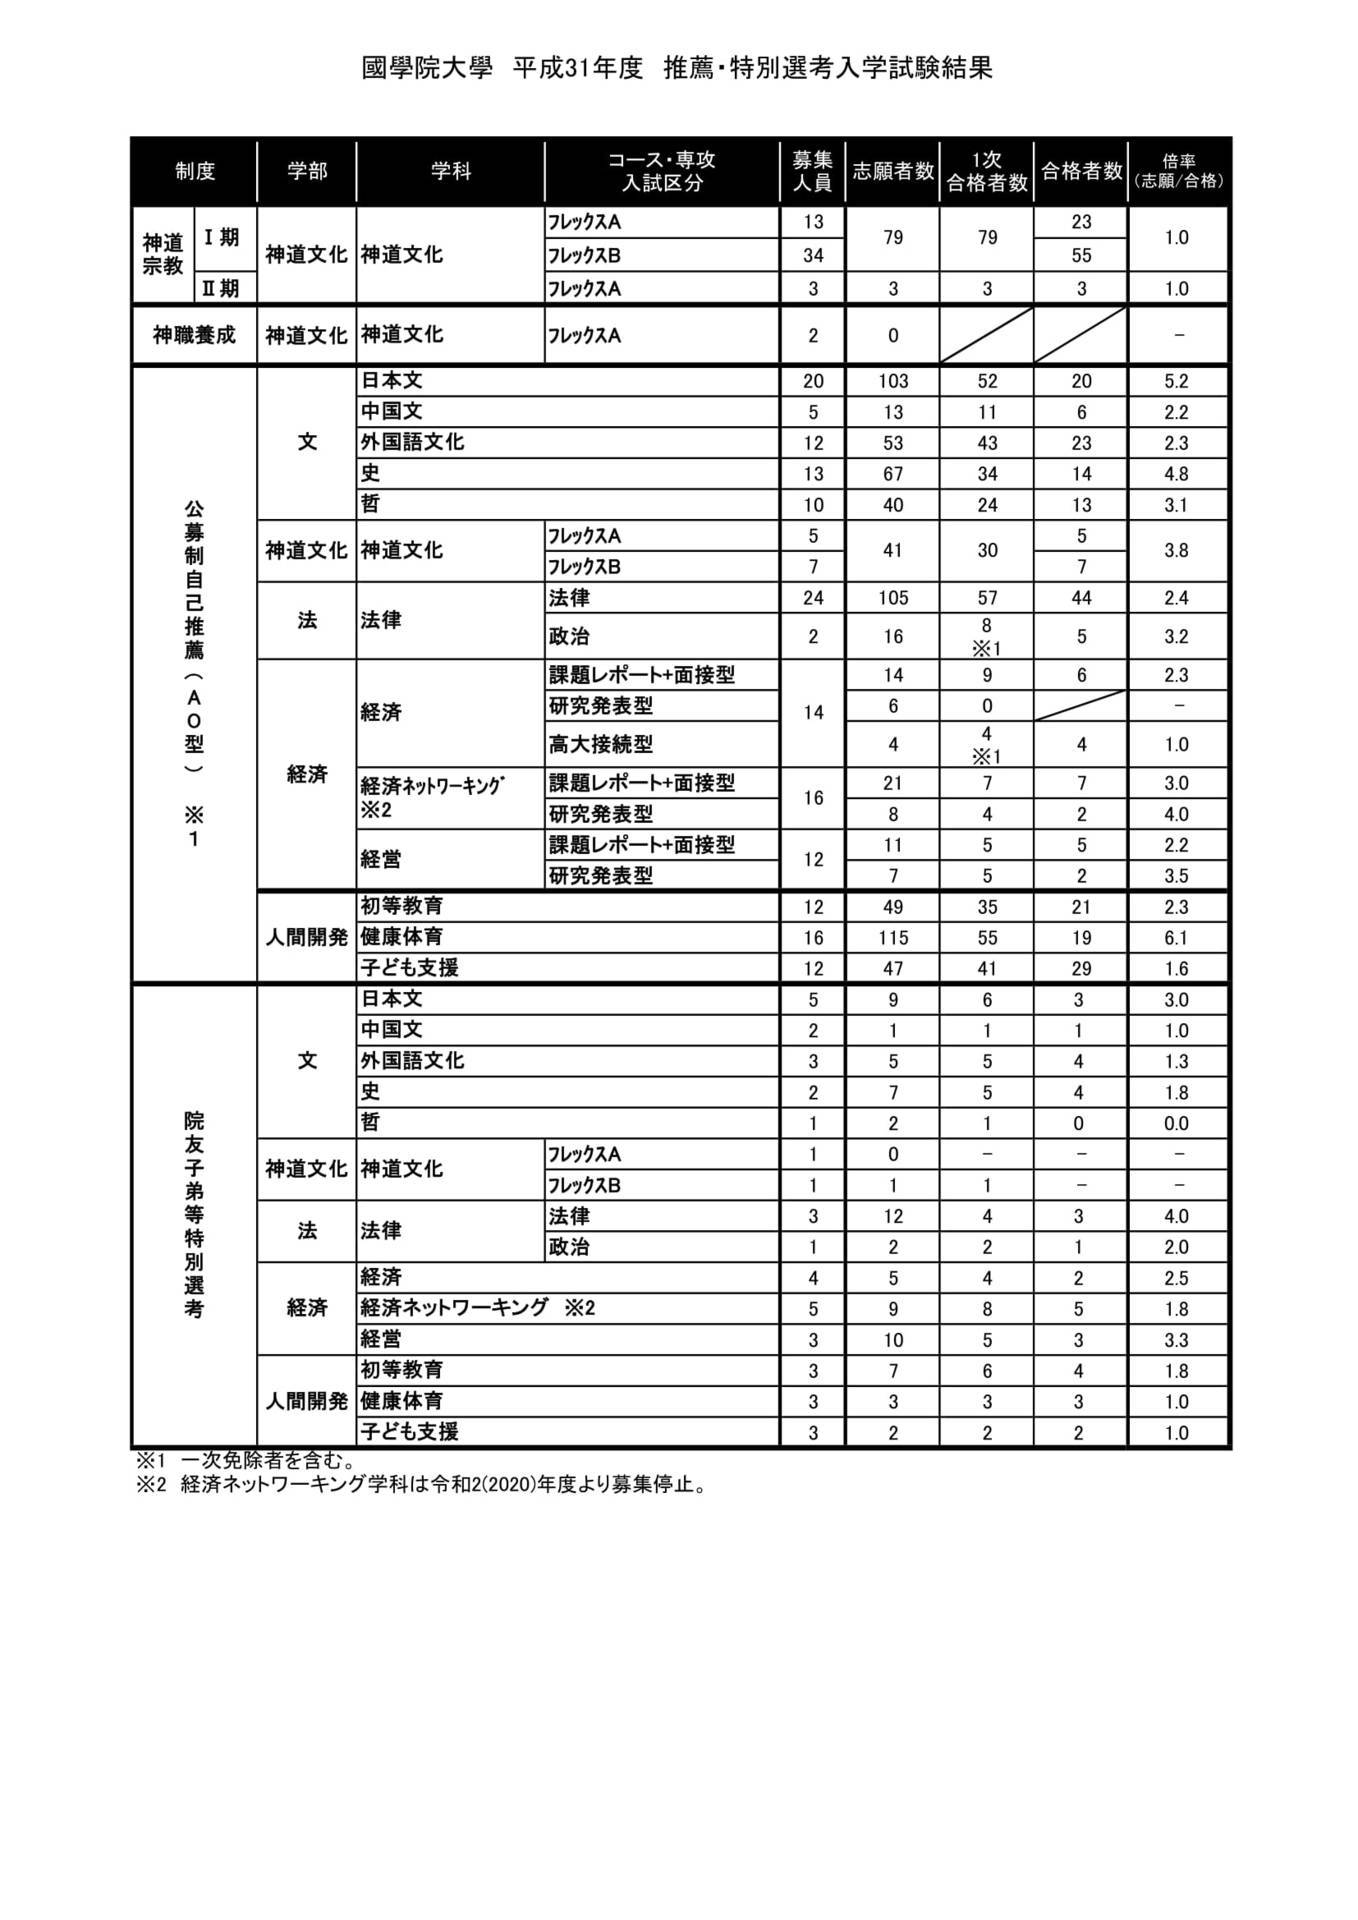 國學院大學の19年度ａｏ入試結果がこれだあ 新宿駅のニチガクは 学校推薦型選抜 総合型選抜に強い